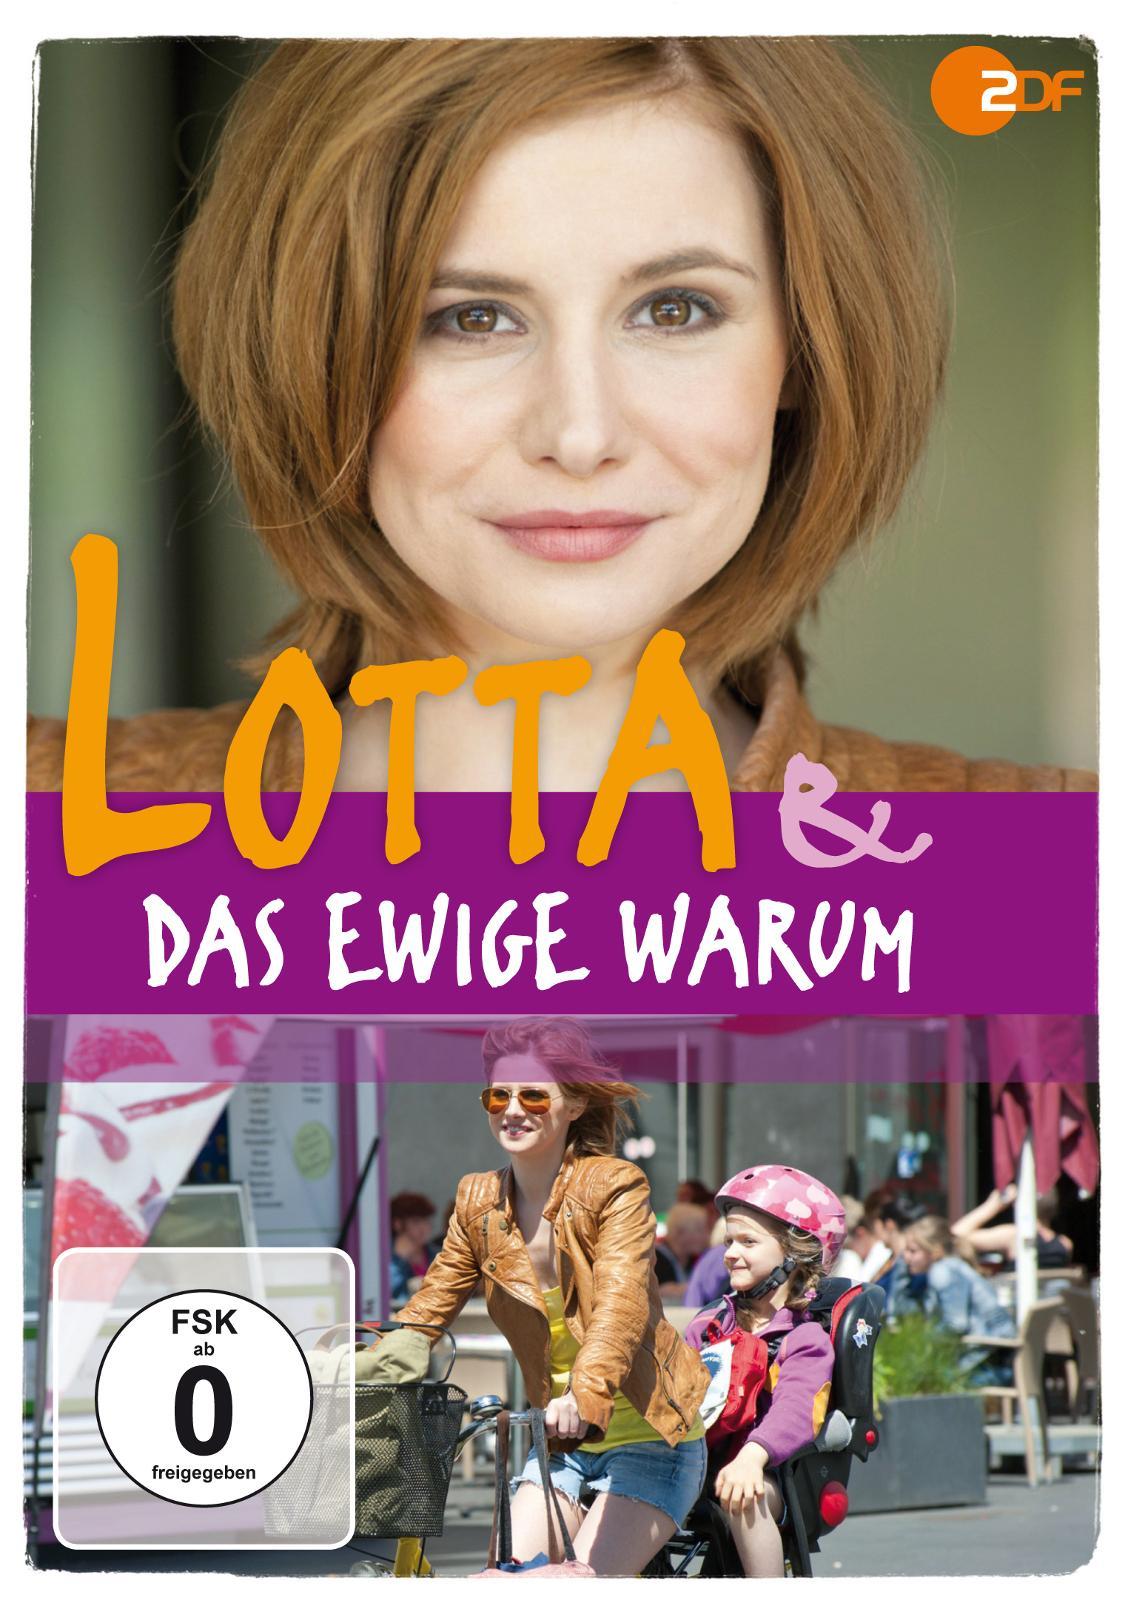 Постер фильма Лотта и вечное «Почему?» | Lotta & das ewige Warum